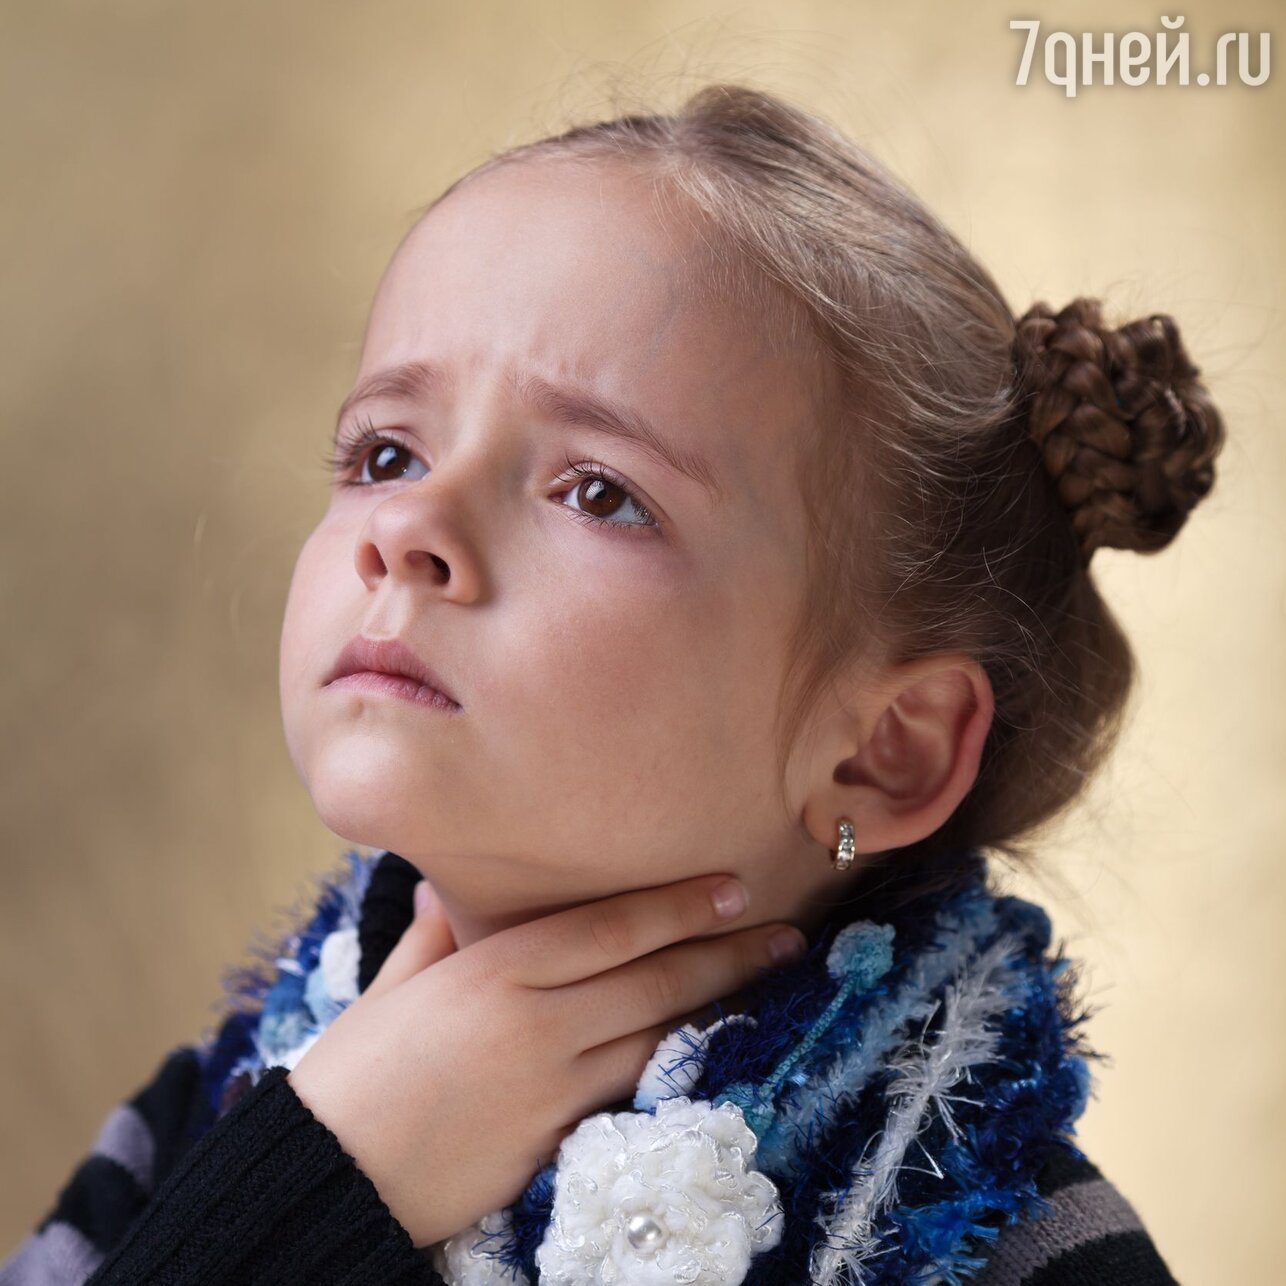 Чем лечить горло ребенку и взрослому?